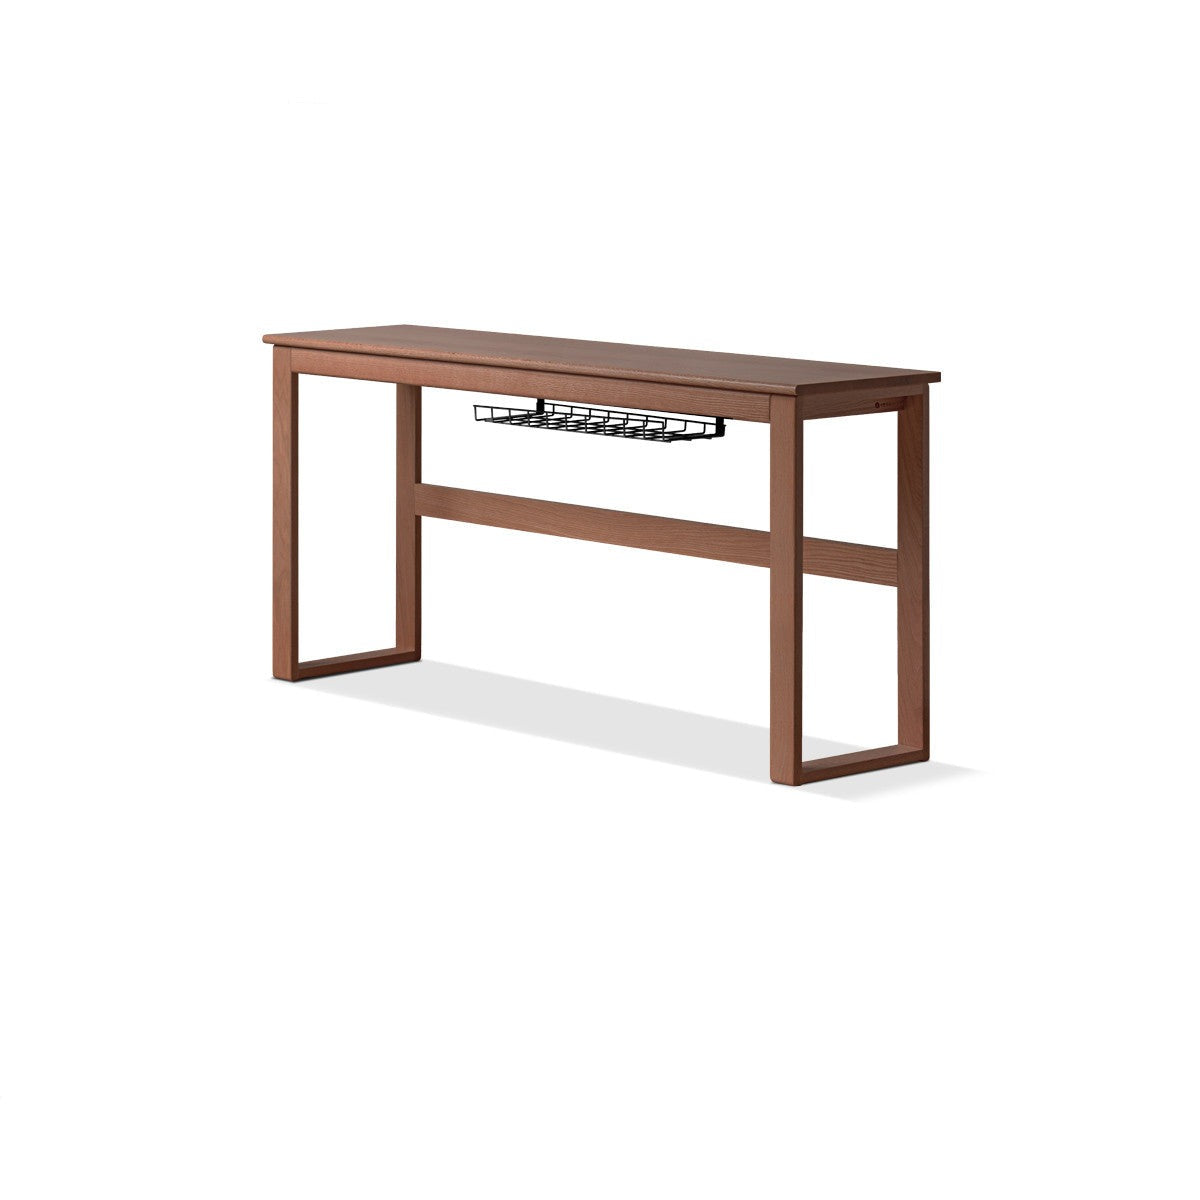 Oak Solid wood long narrow desk-